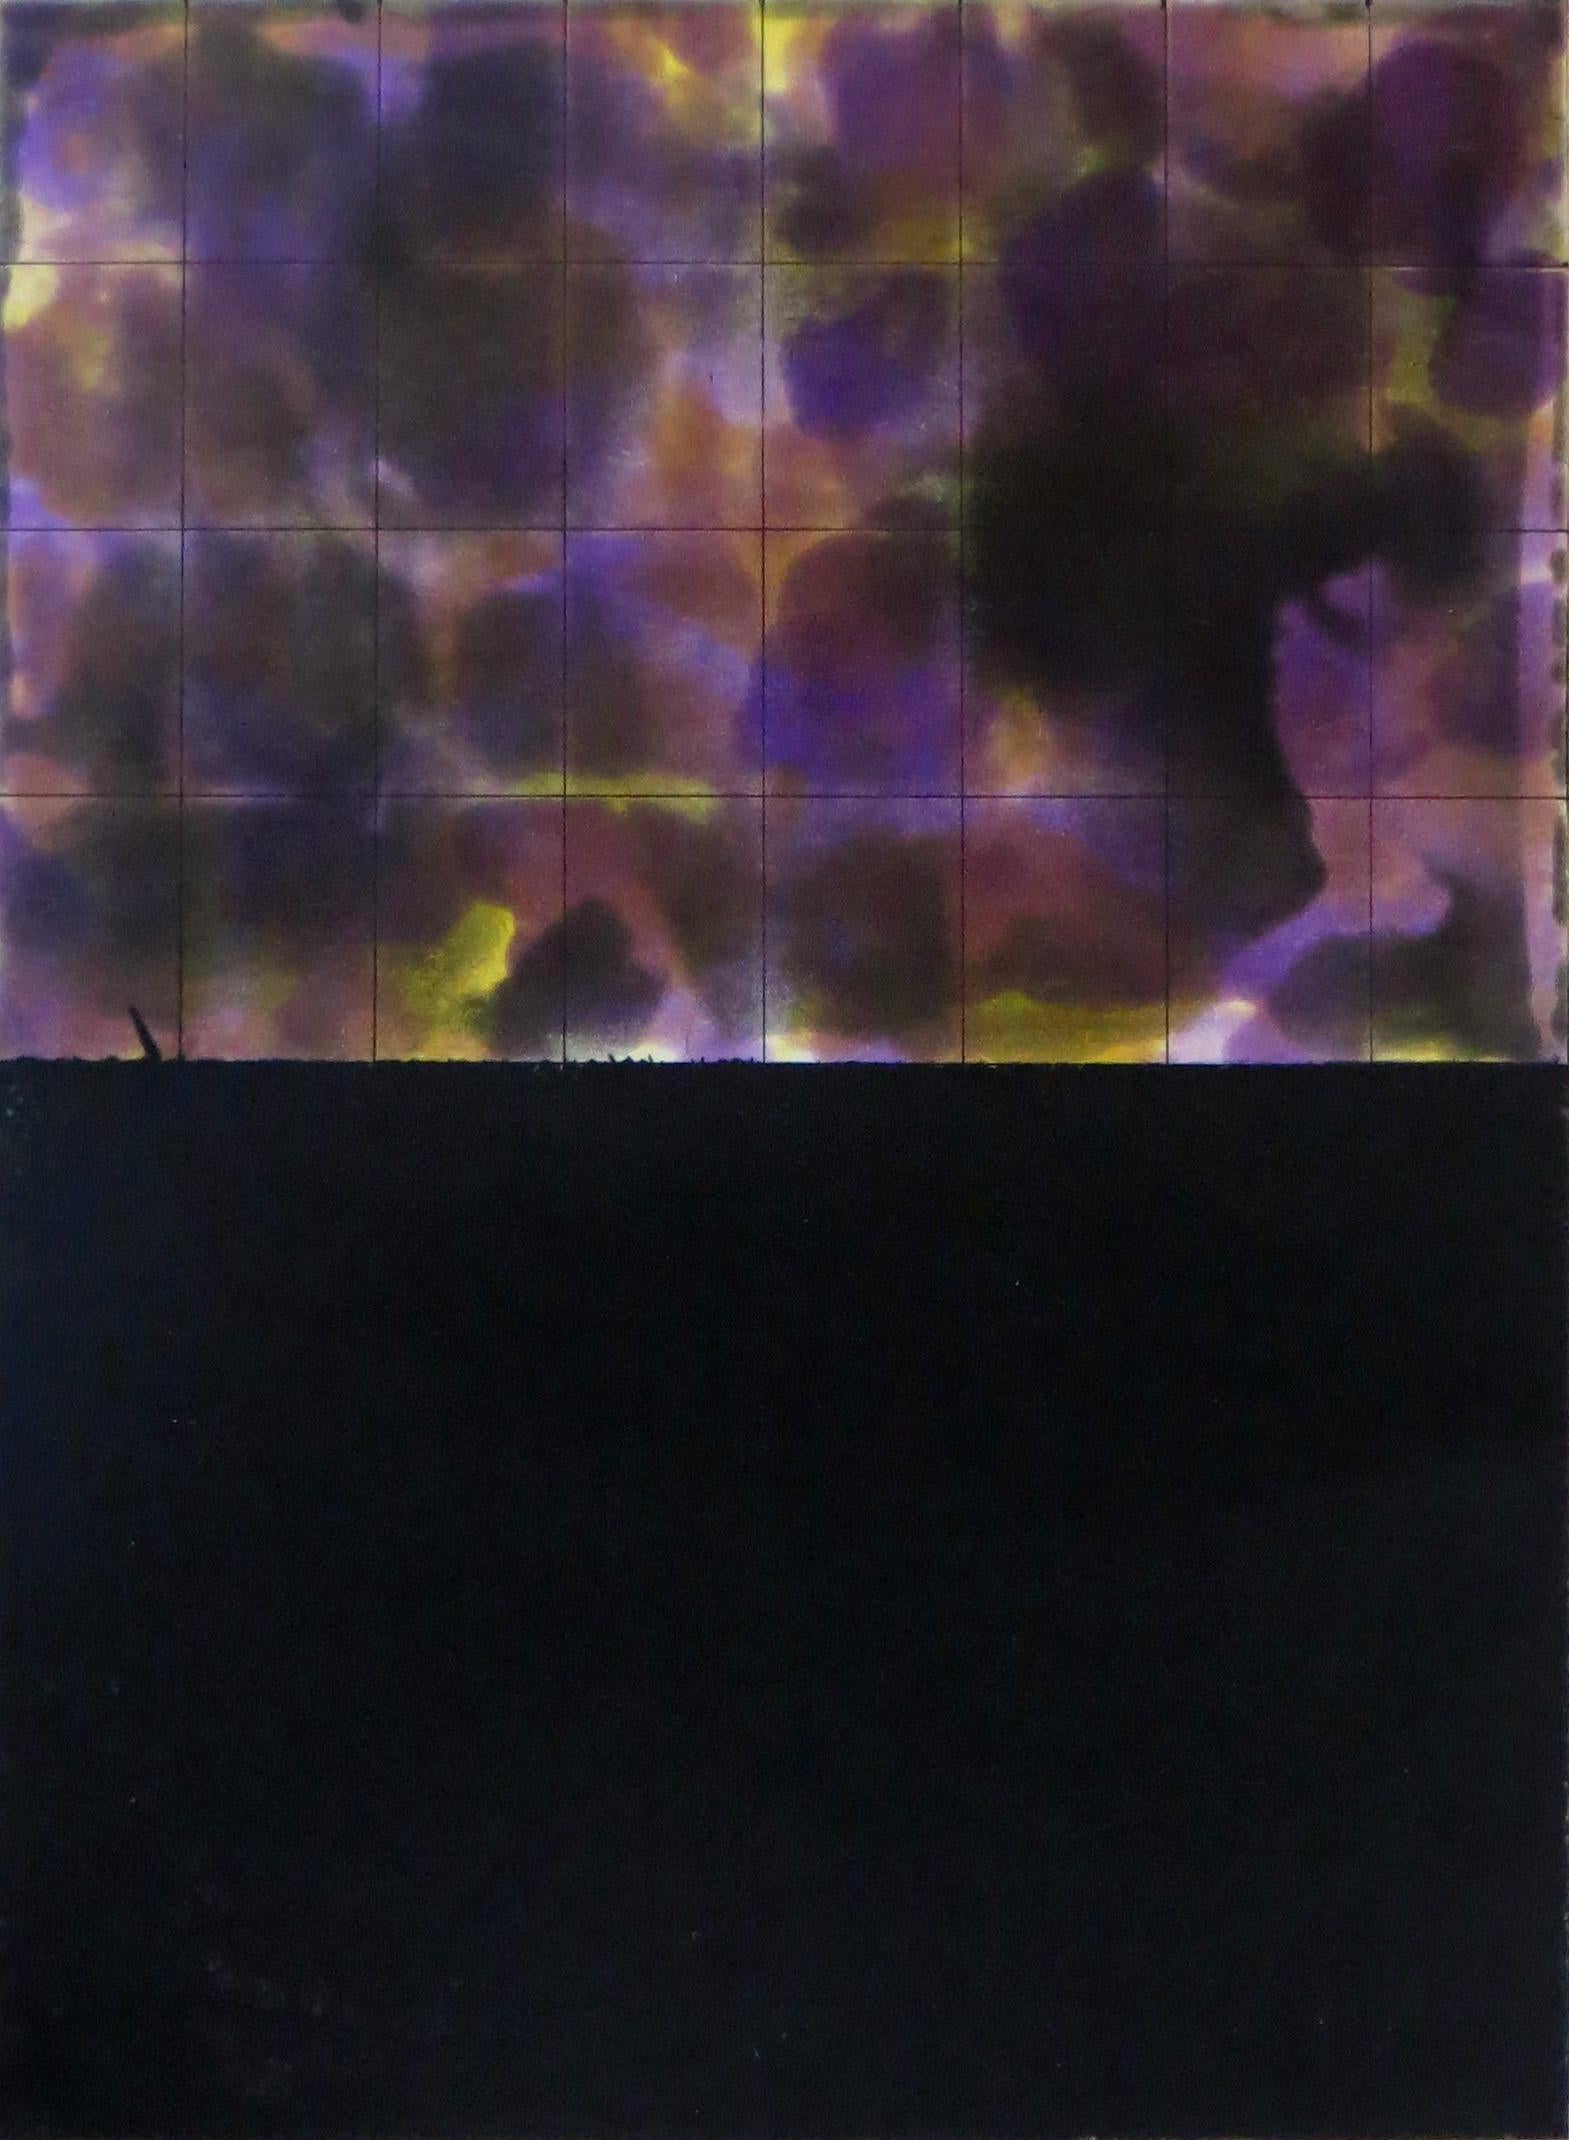 Artist: Yutaka Yoshinaga – Japanese (1948- )
Title: 96-C-1
Year: 1996
Medium: Color spit bite aquatint with drypoint and hard ground etching.
Image size: 13¾ x 9½